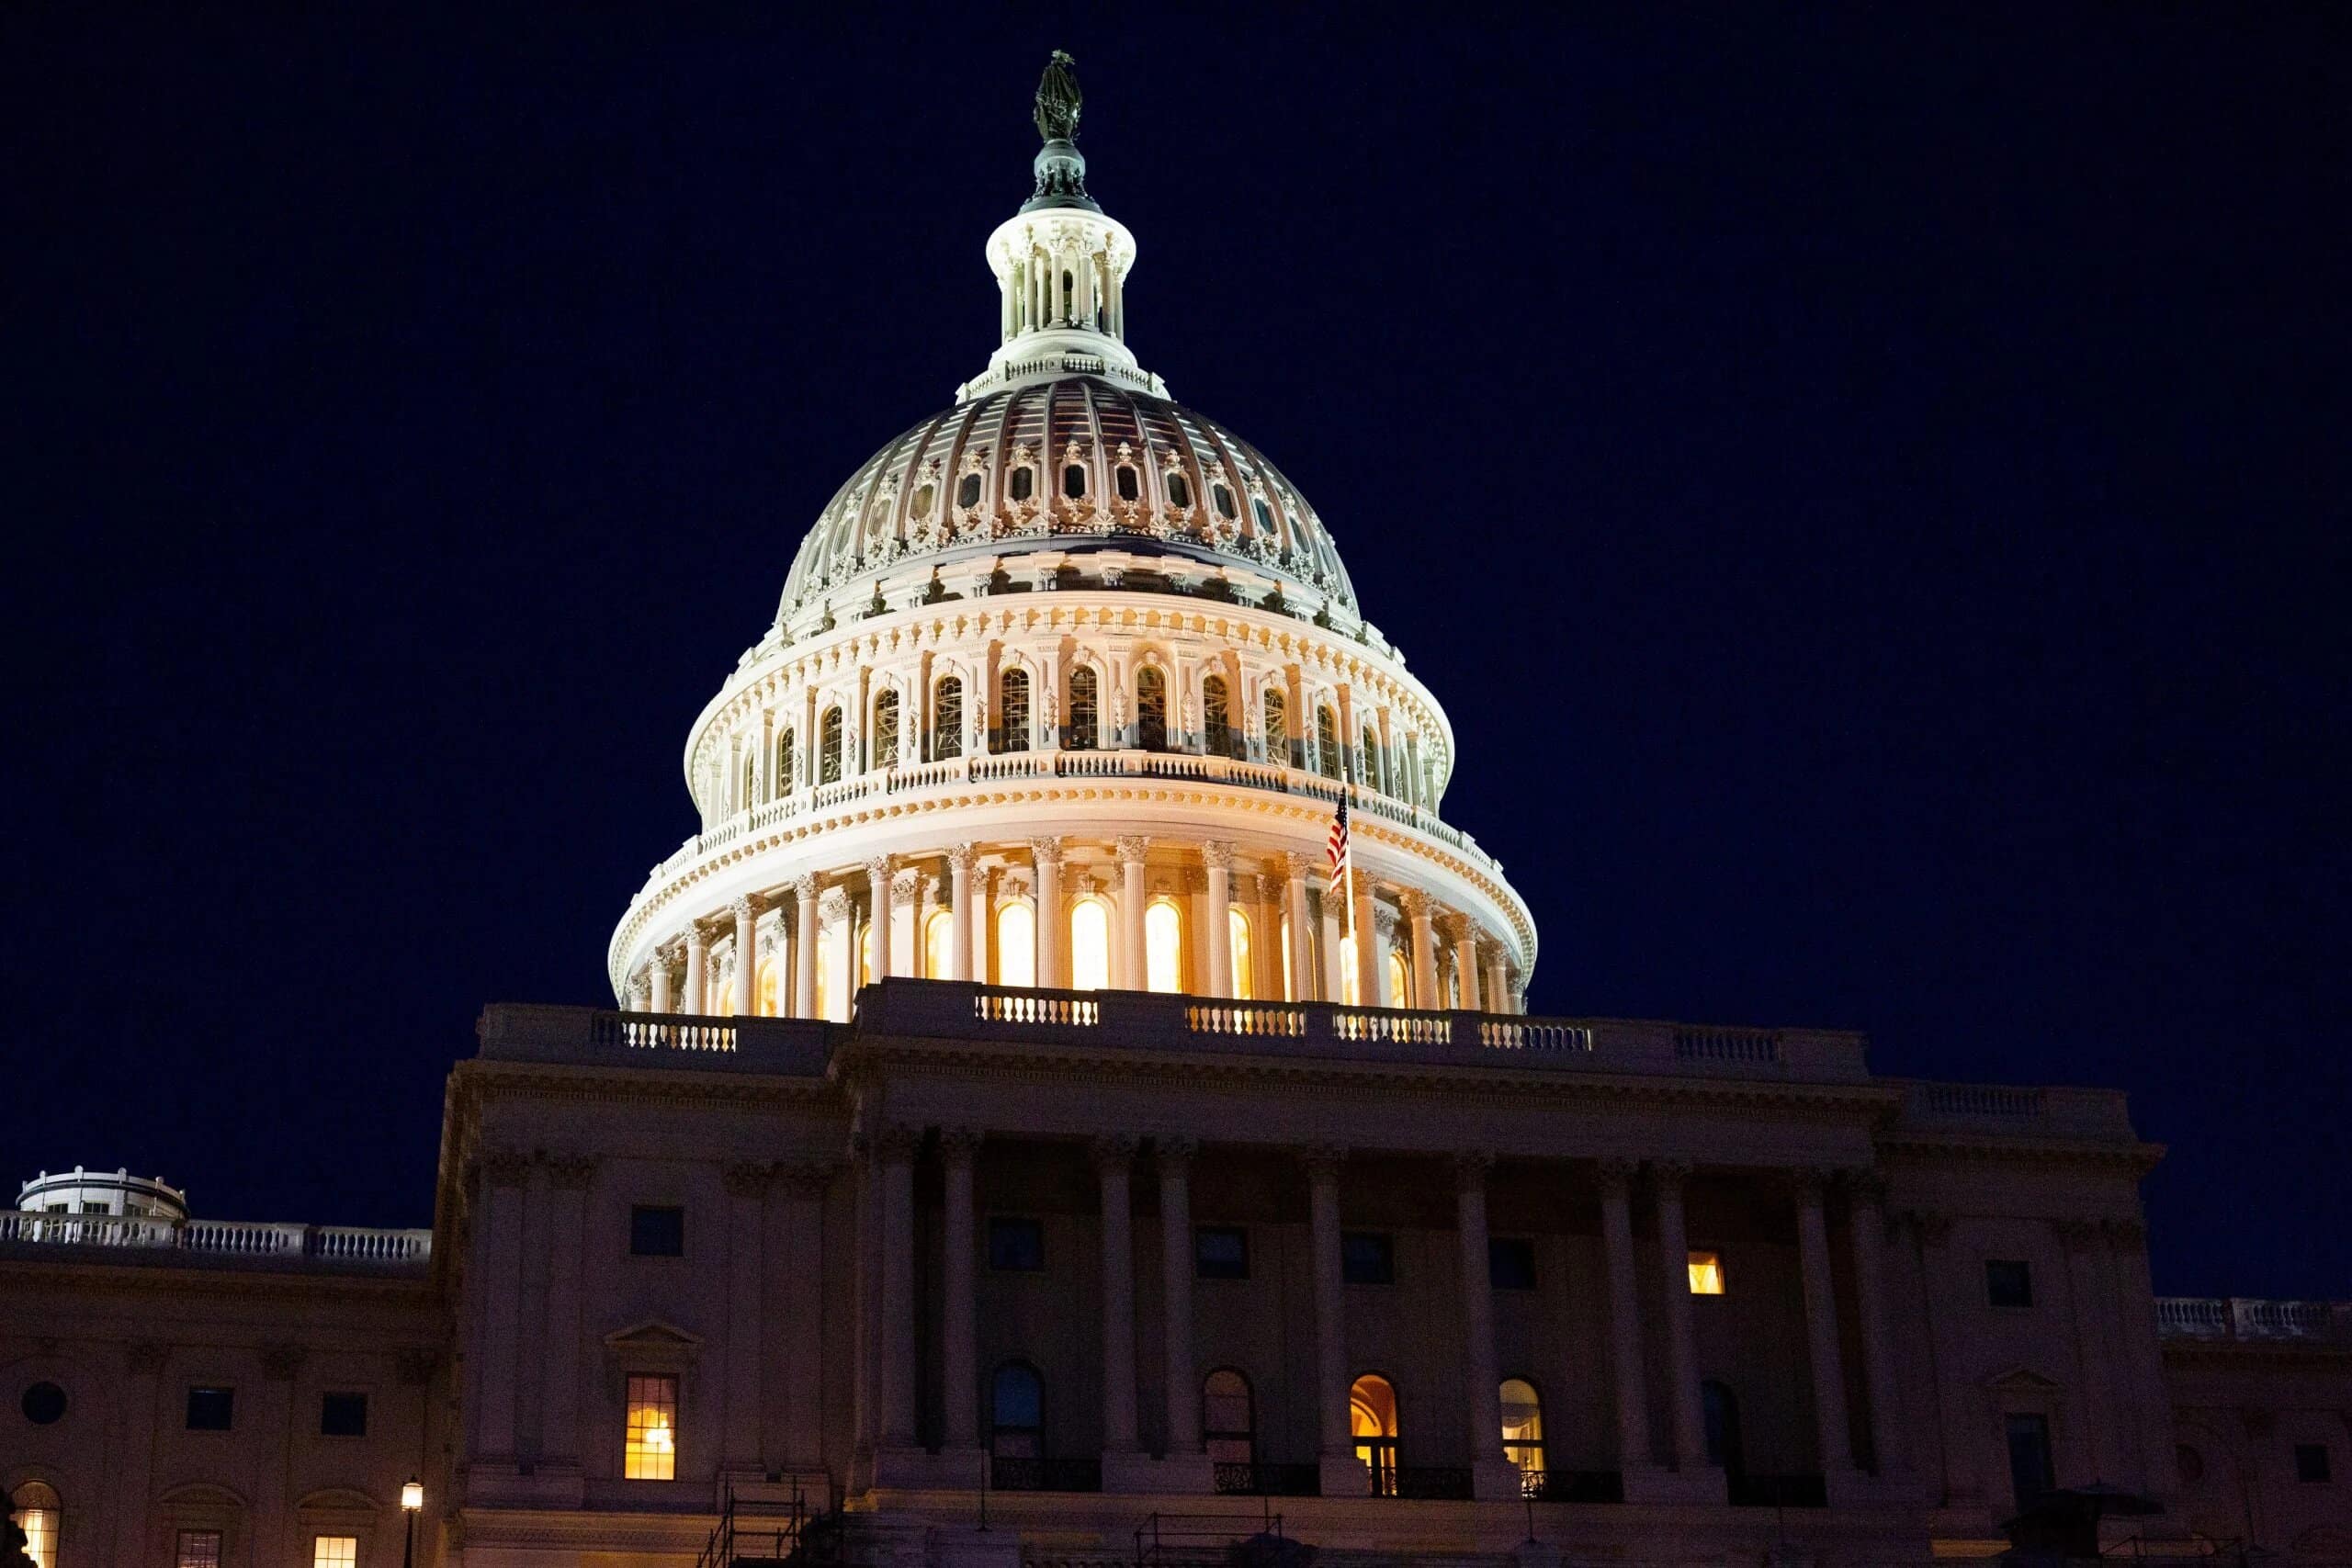 Le Capitole des États-Unis illuminé durant la nuit.